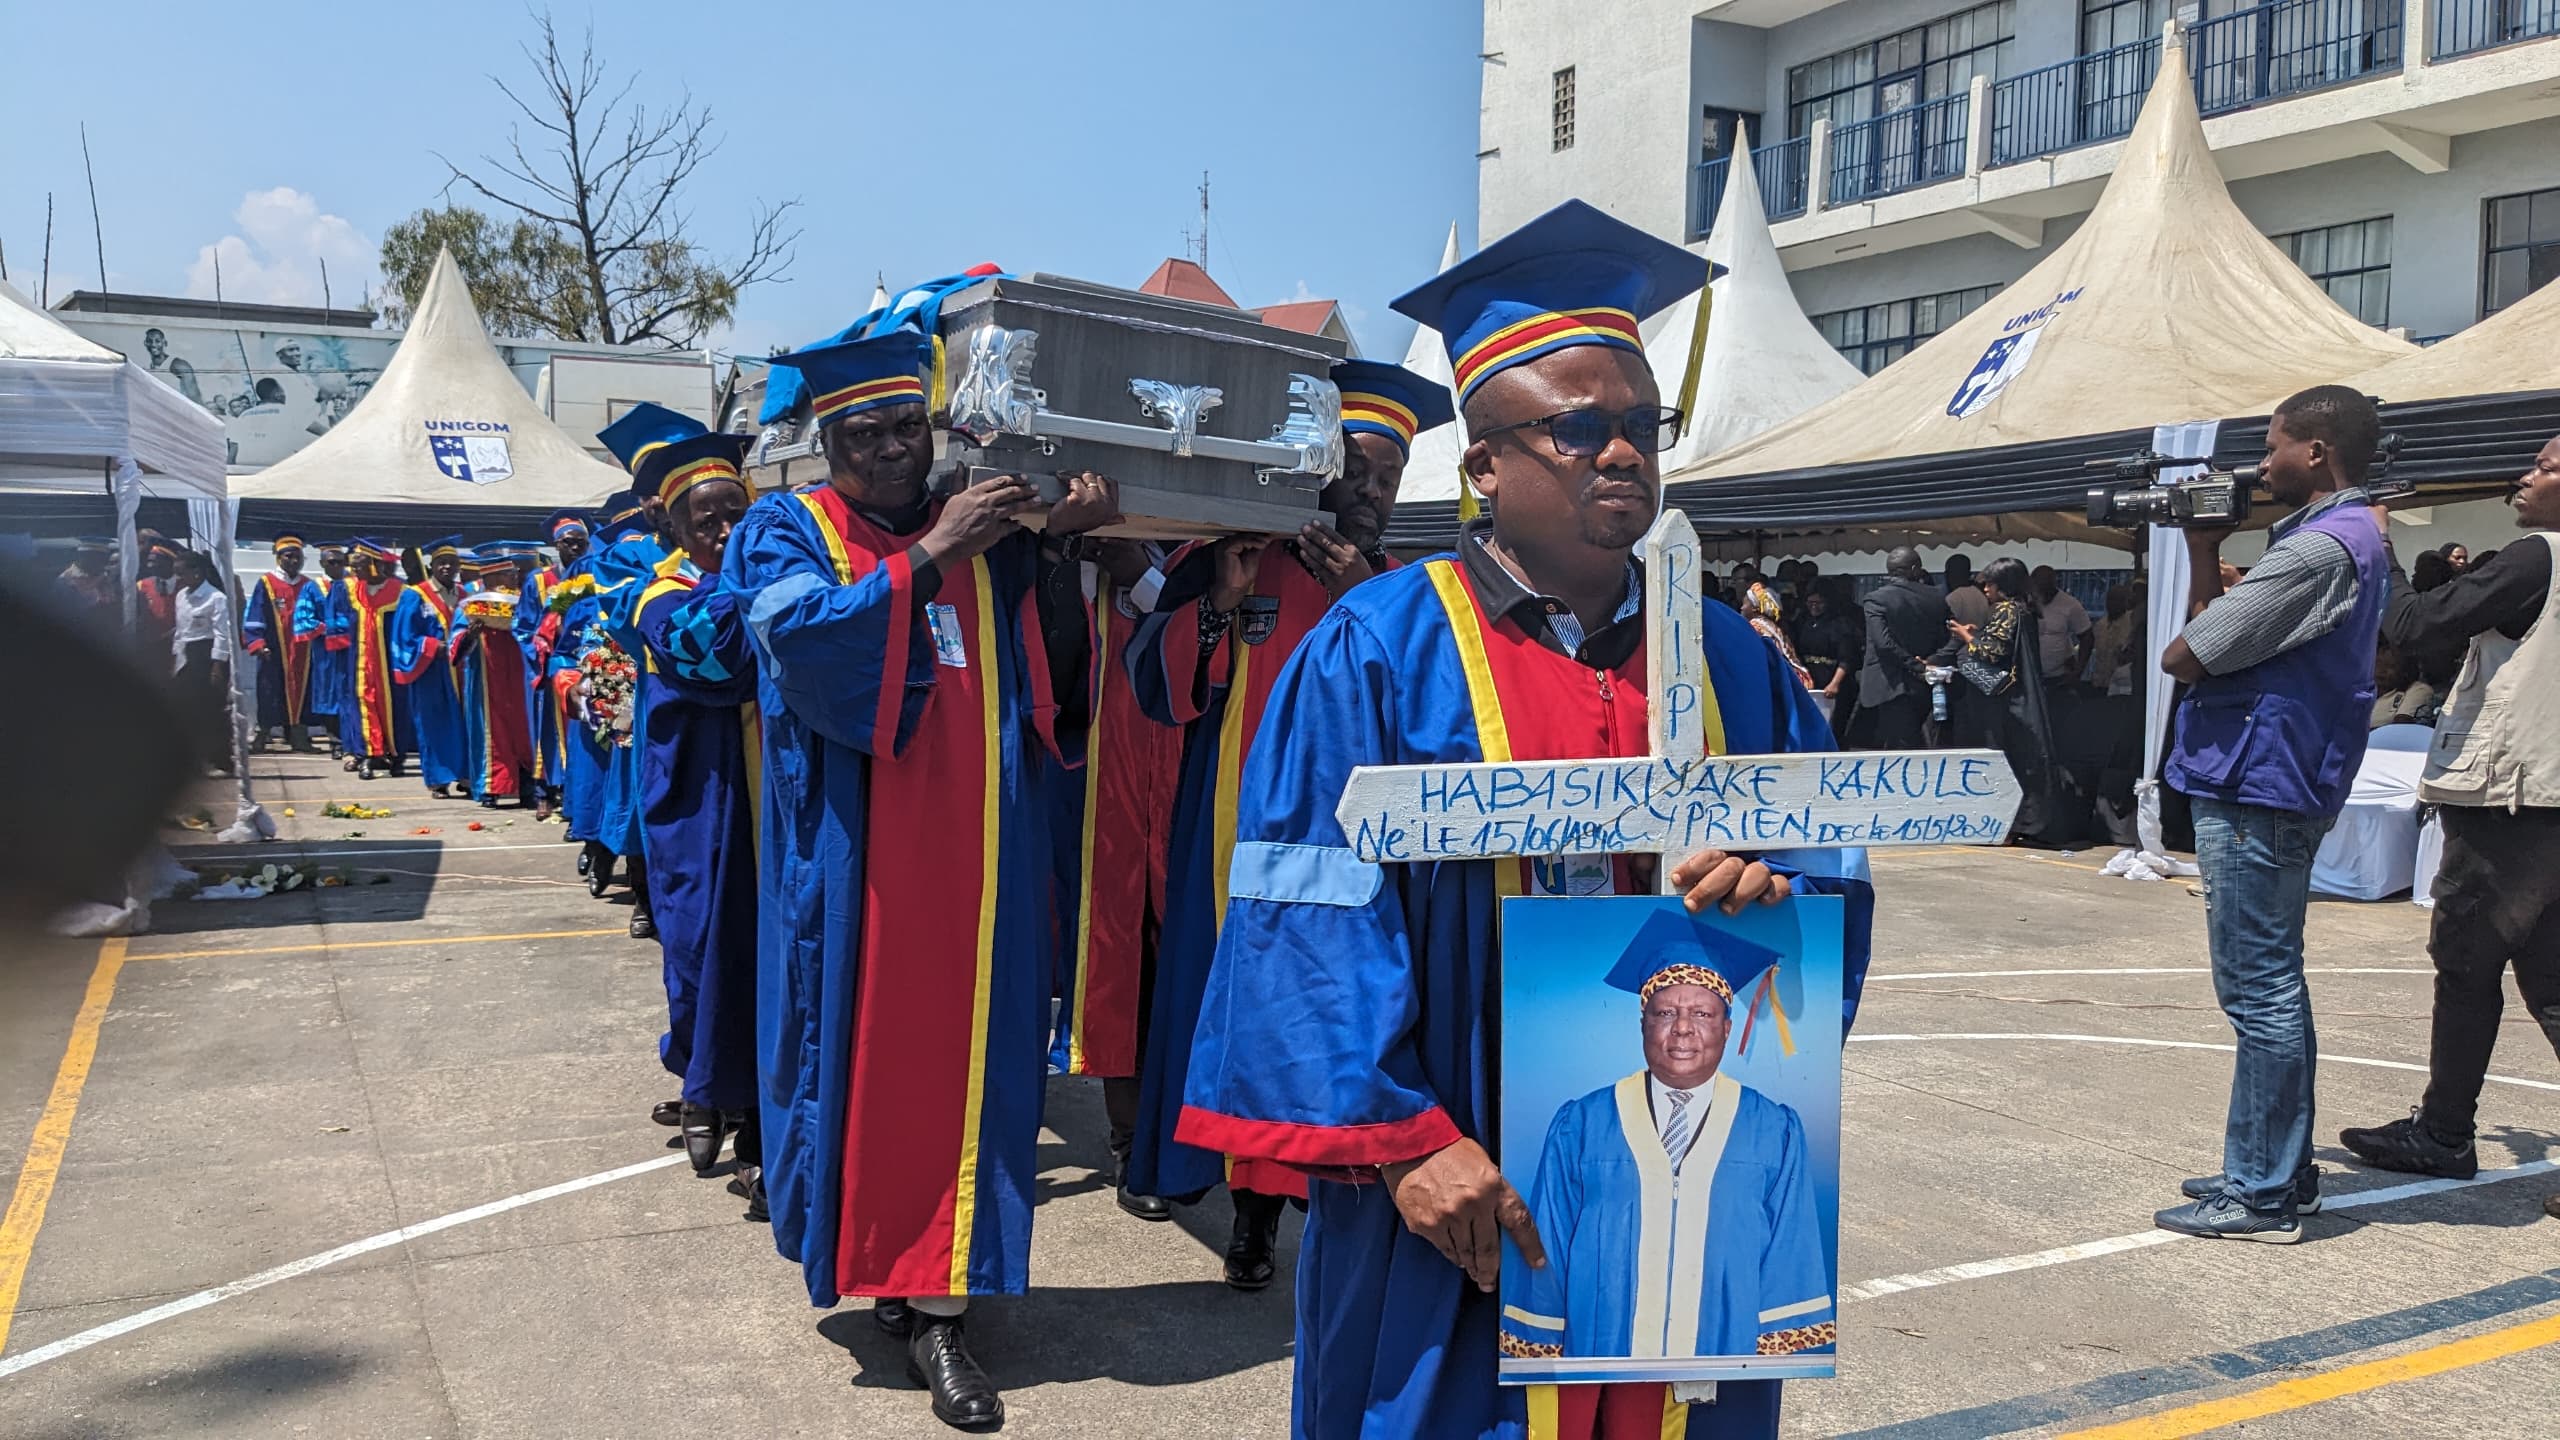 Nord-Kivu: Les derniers hommages rendus au Professeur Cyprien Habasikiyake par l’Université de Goma